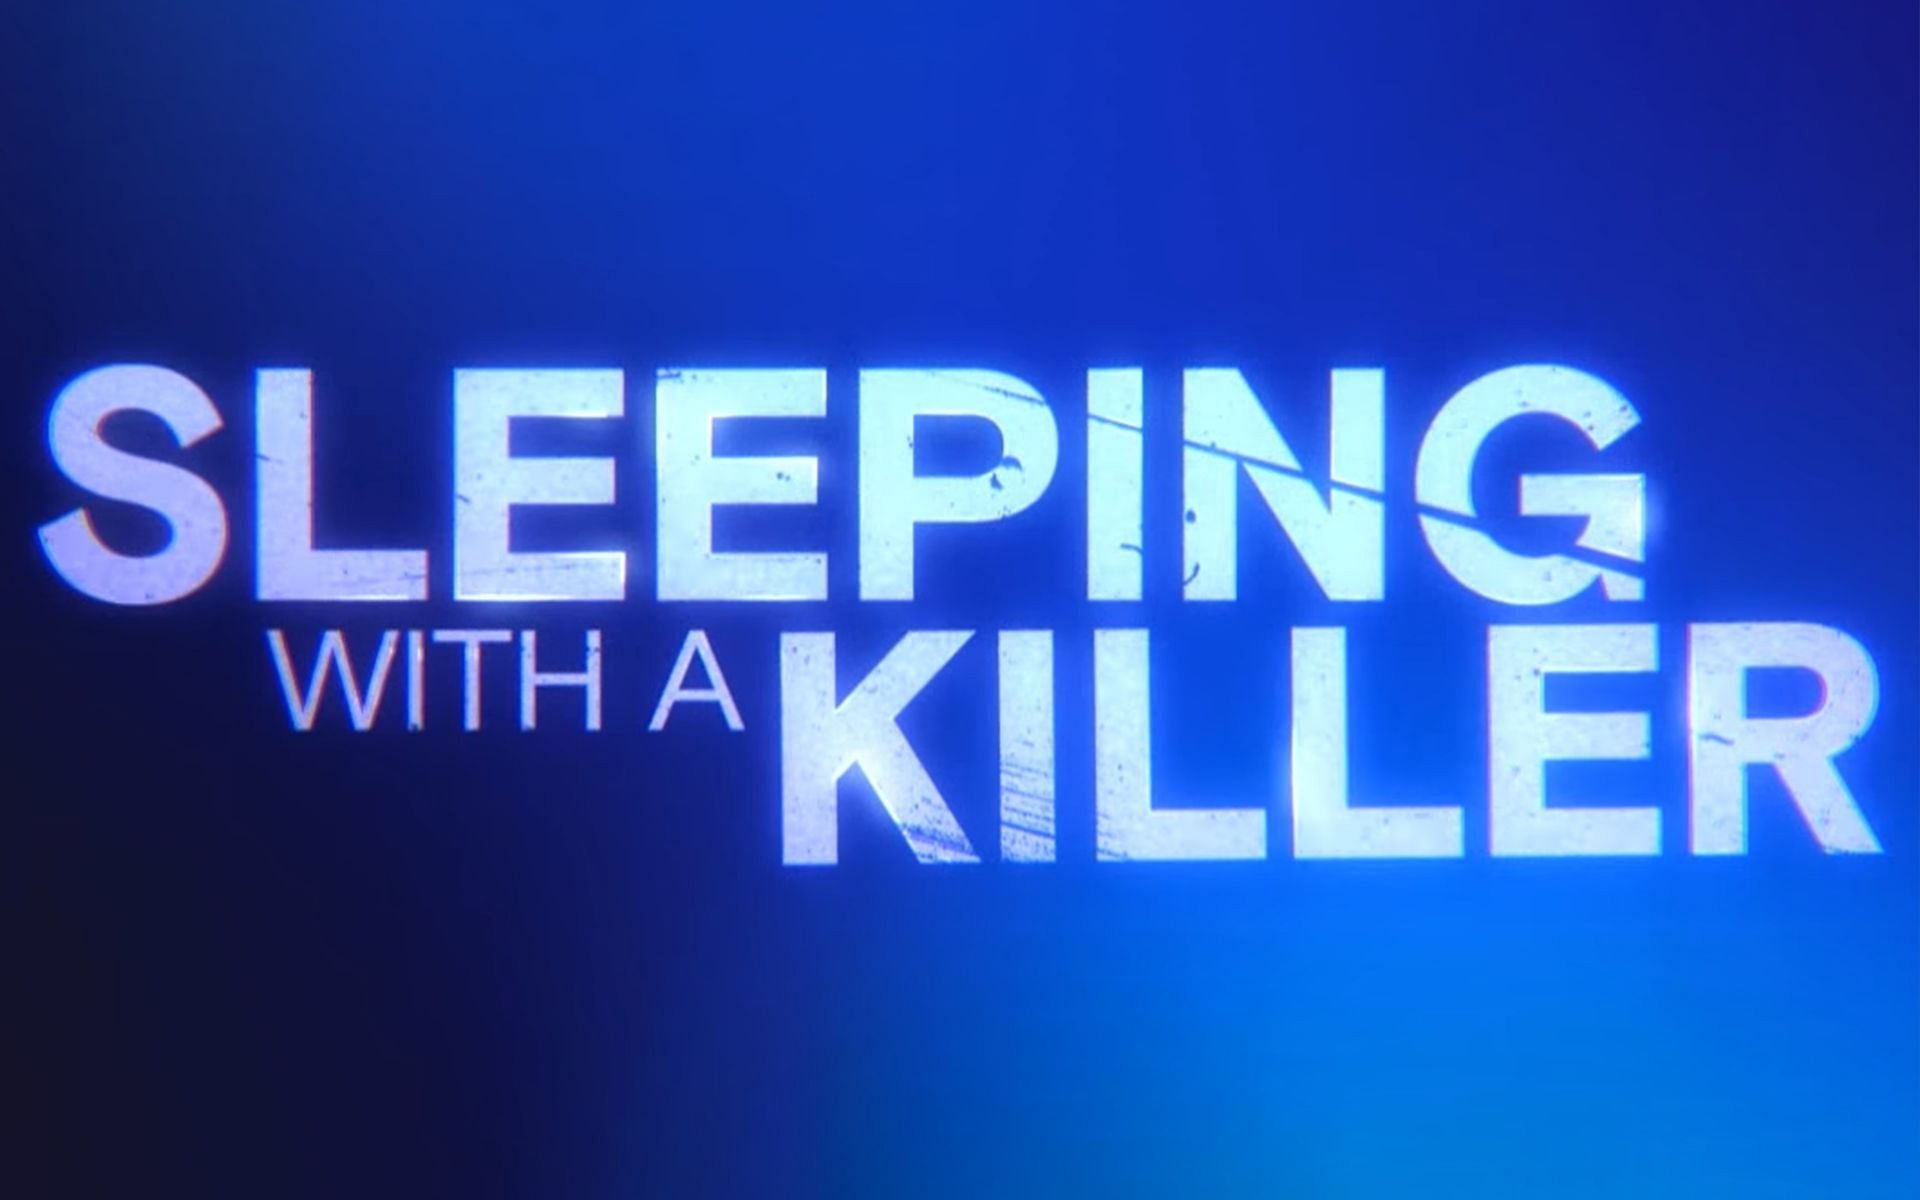 Sleeping With a Killer on Lifetime (Image via Lifetime)